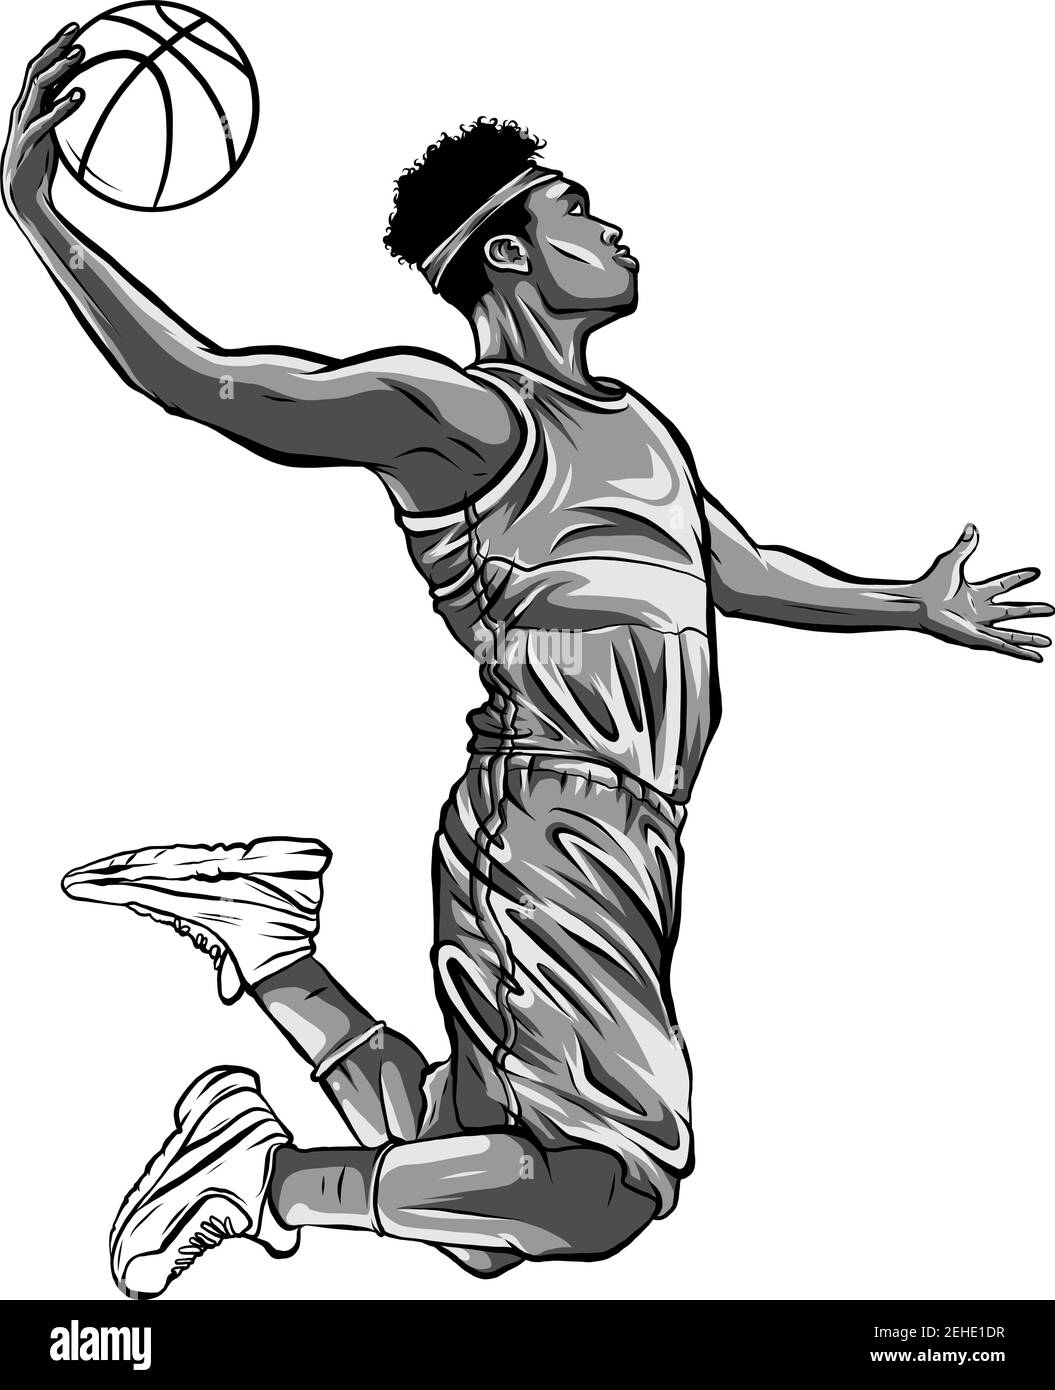 Cartoon est joueur de basket-ball dribble en mouvement avec un sourire  Image Vectorielle Stock - Alamy